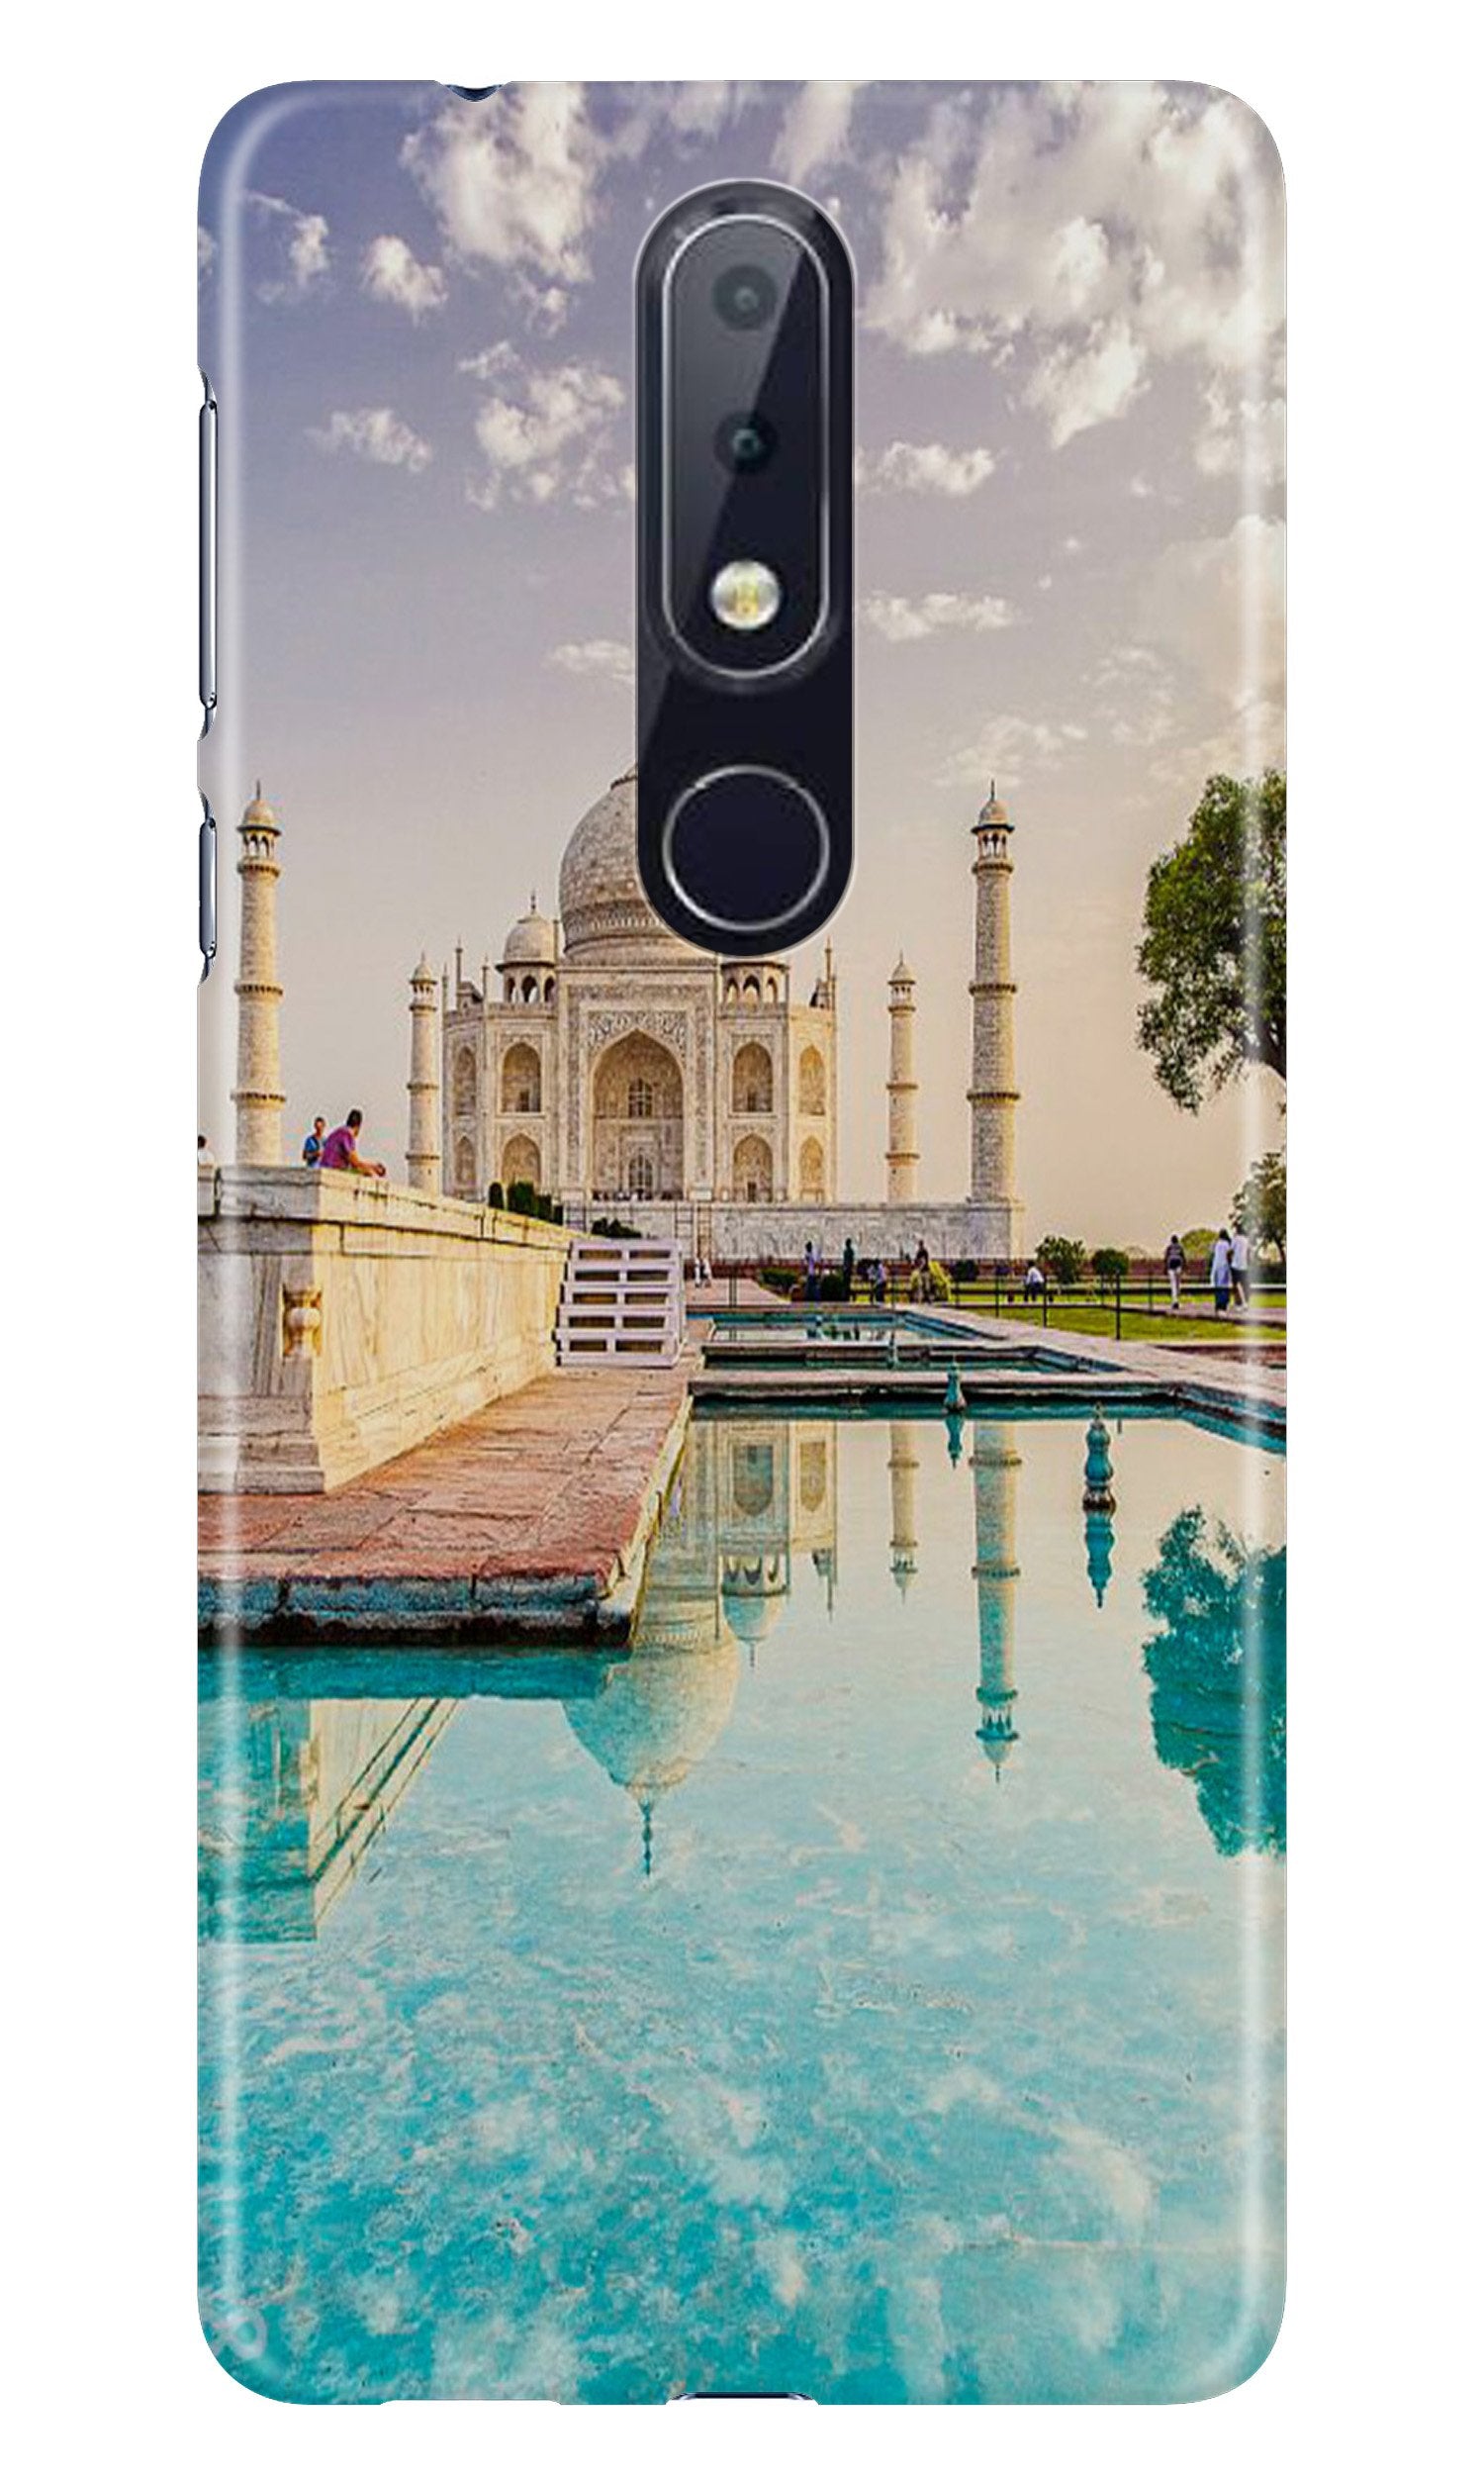 Taj Mahal Case for Nokia 7.1 (Design No. 297)